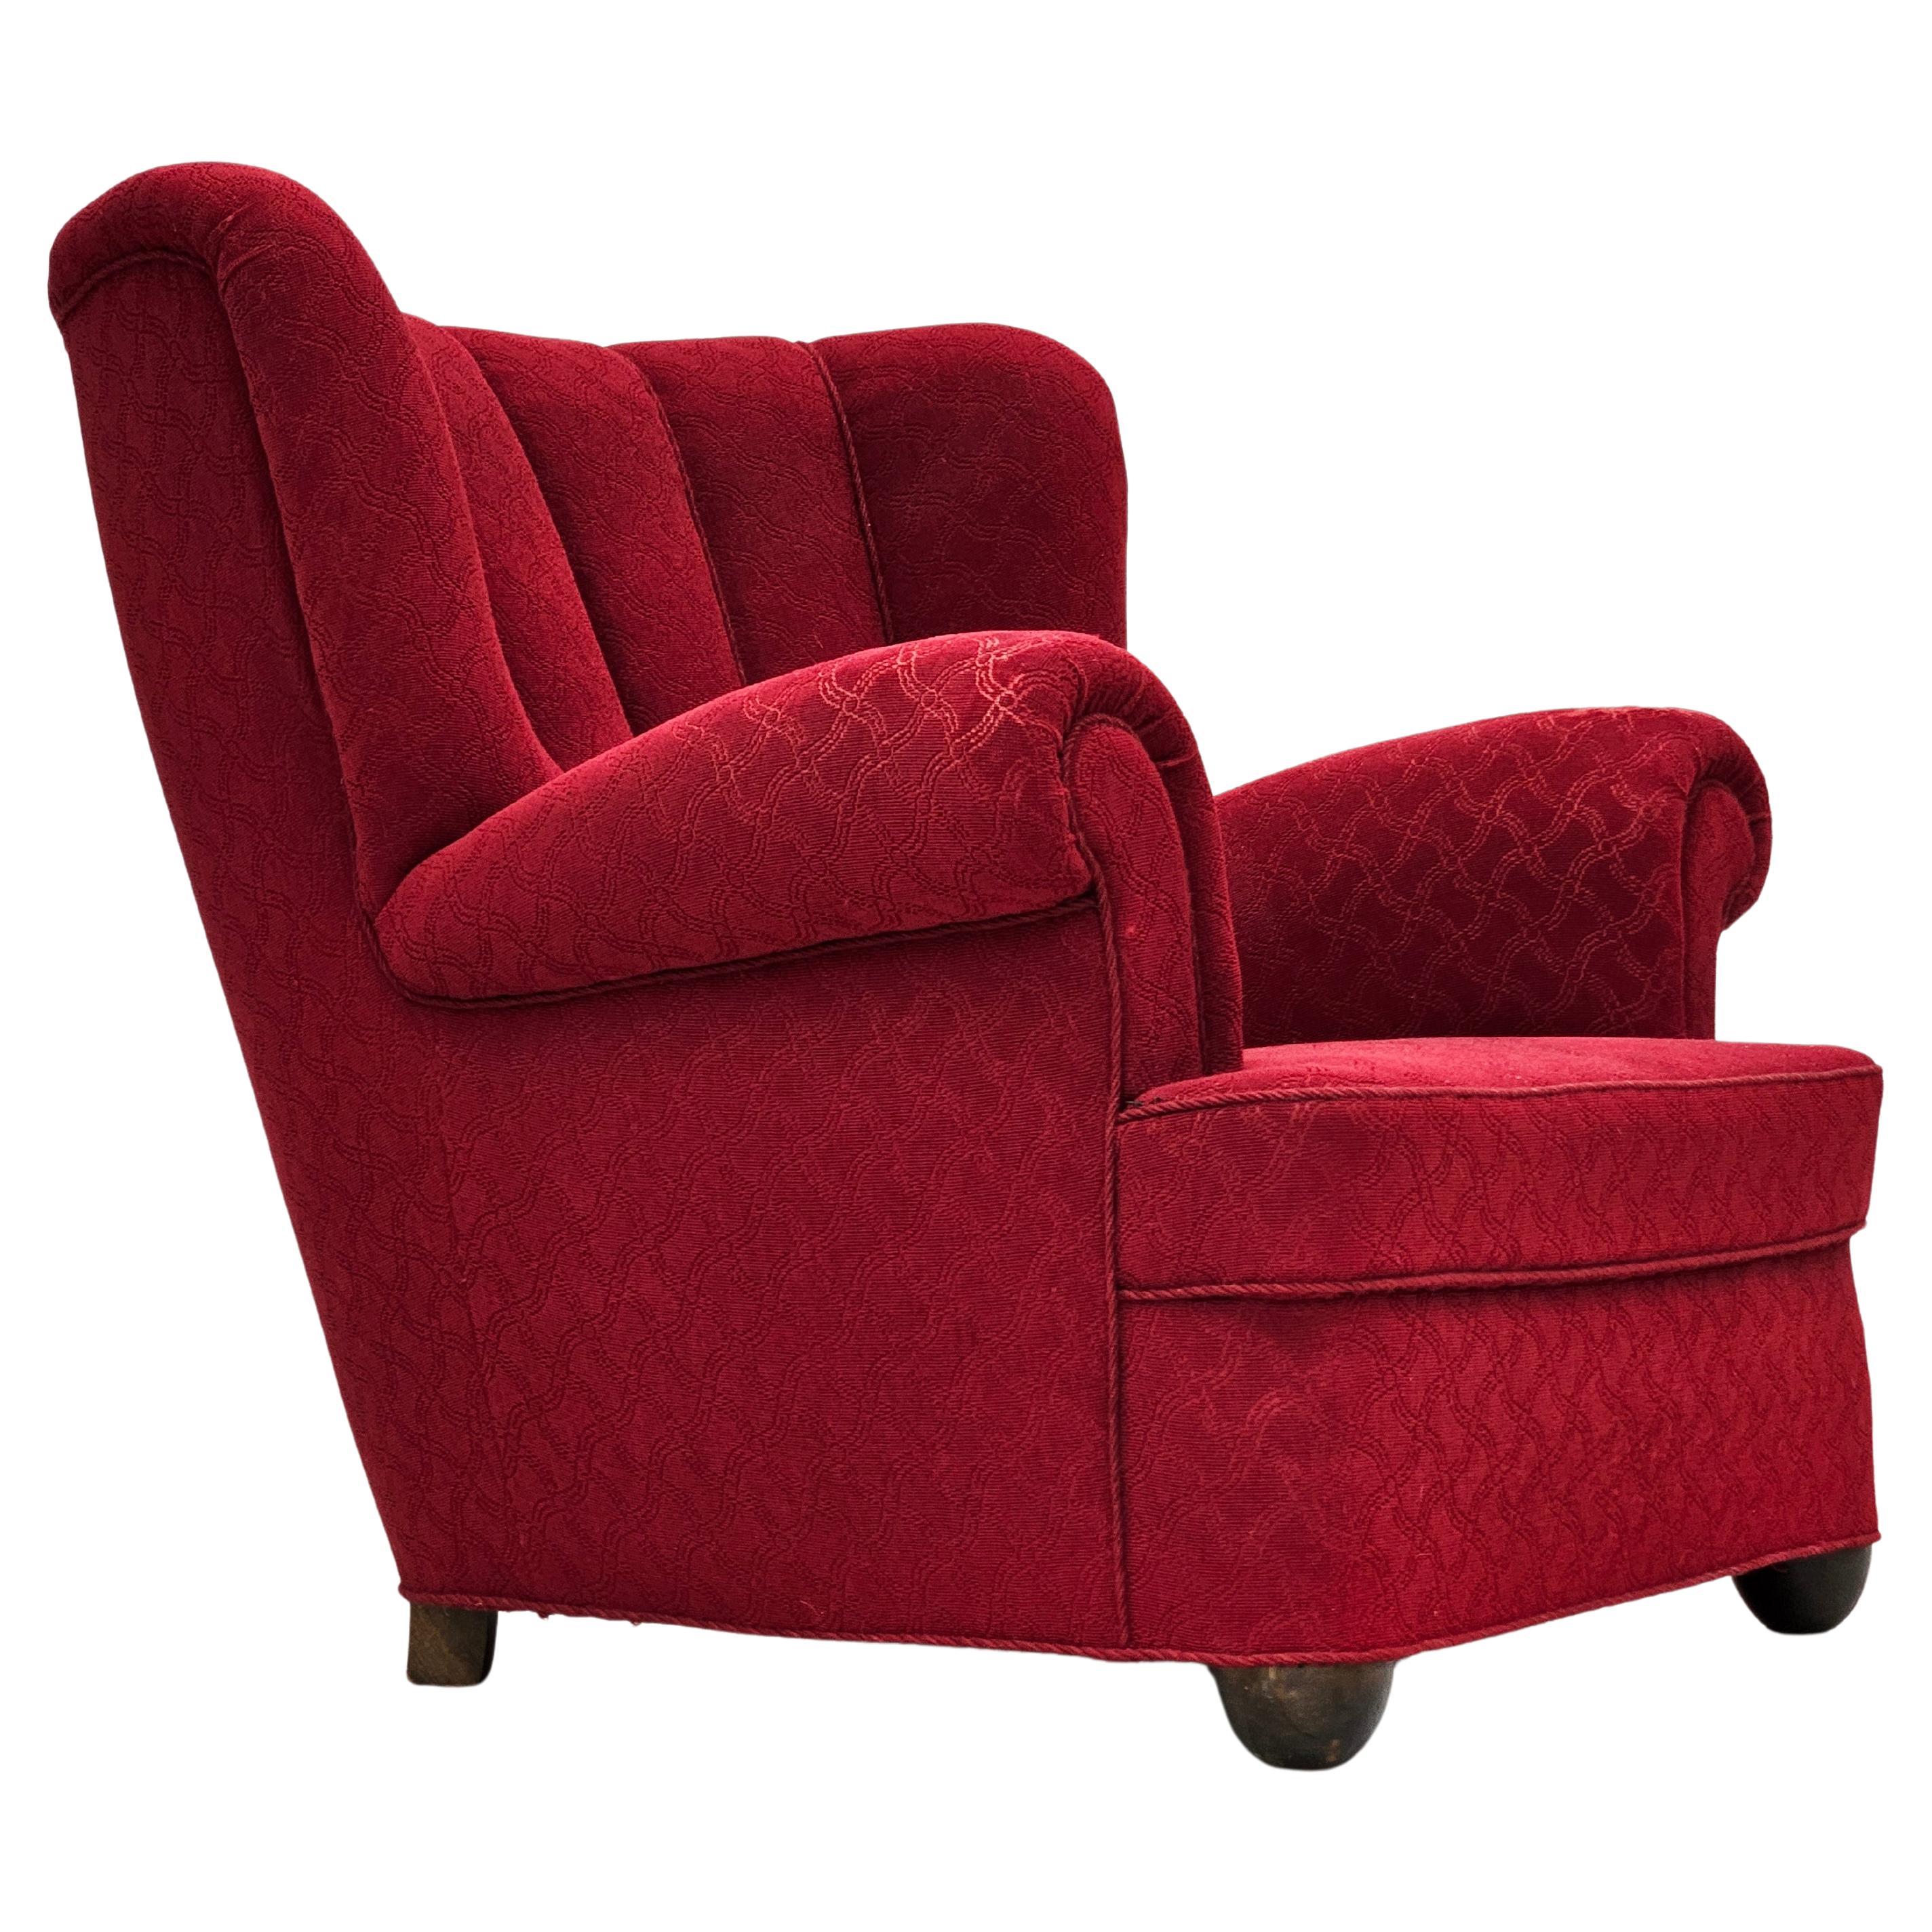 1960s, fauteuil relax danois, état original, coton/laine rouge, bois de chêne.